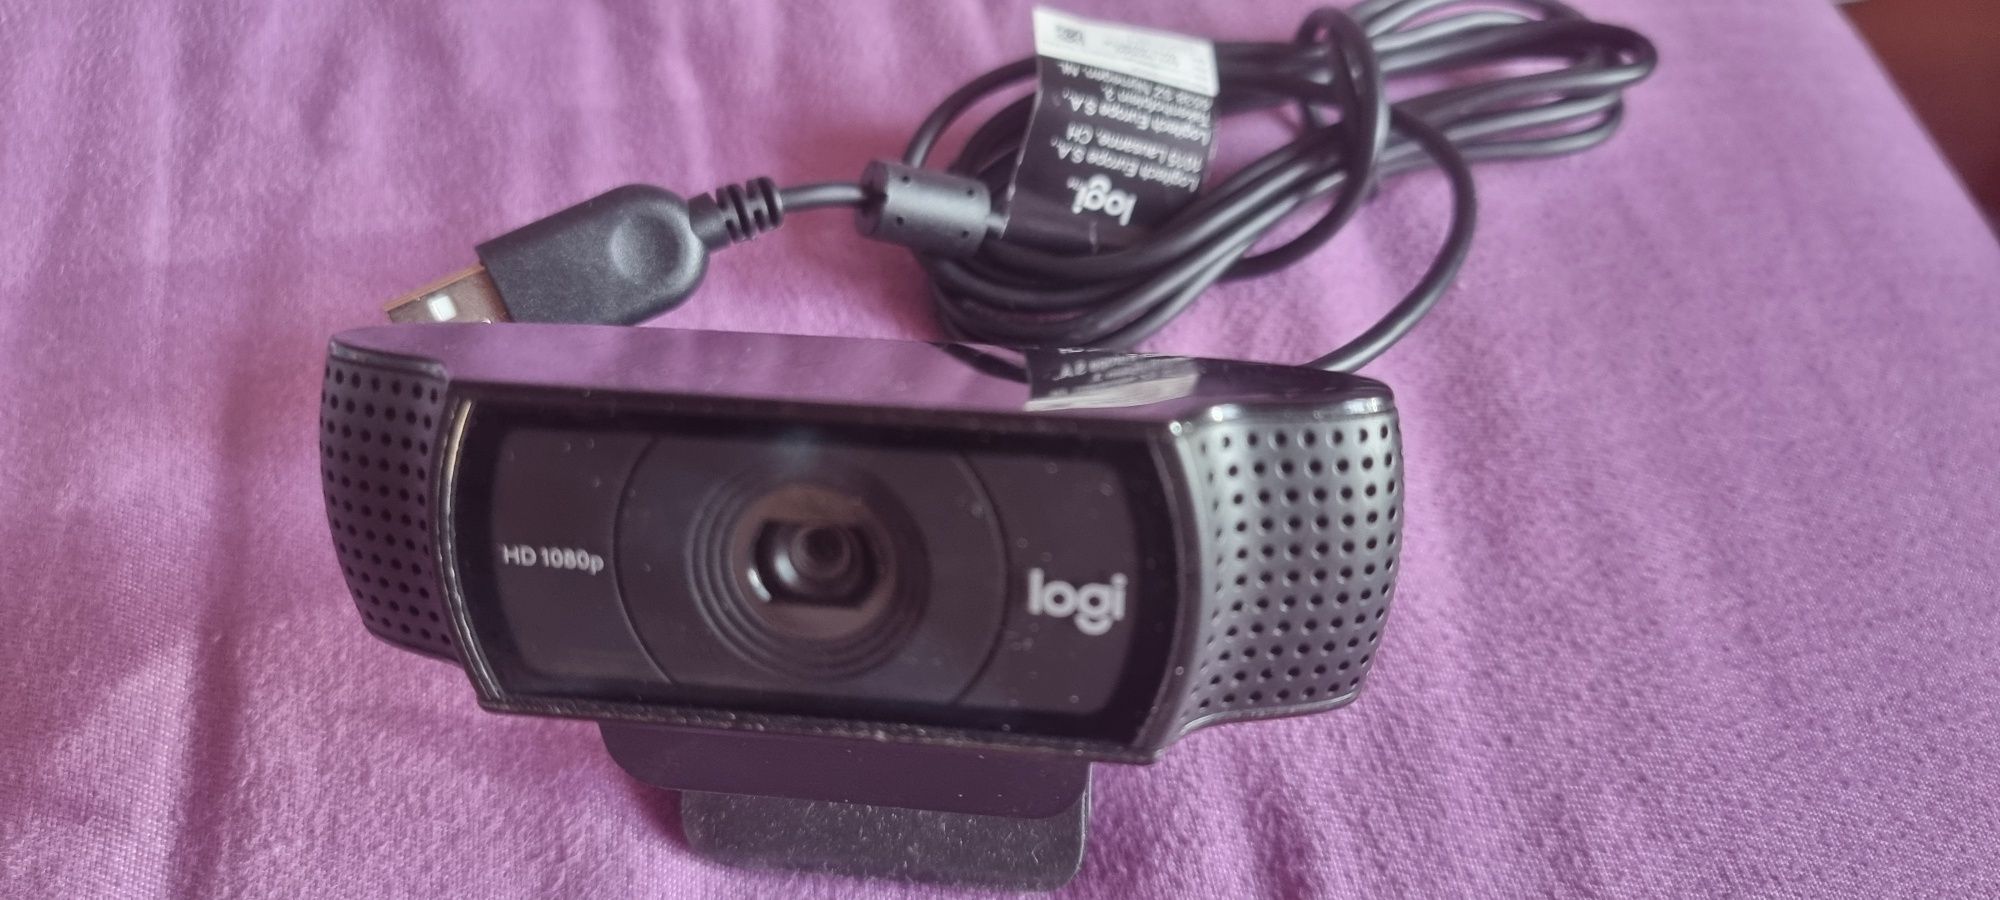 Pachet webcam Logitech 920 pro full HD autofocus si Mifi E5577c router